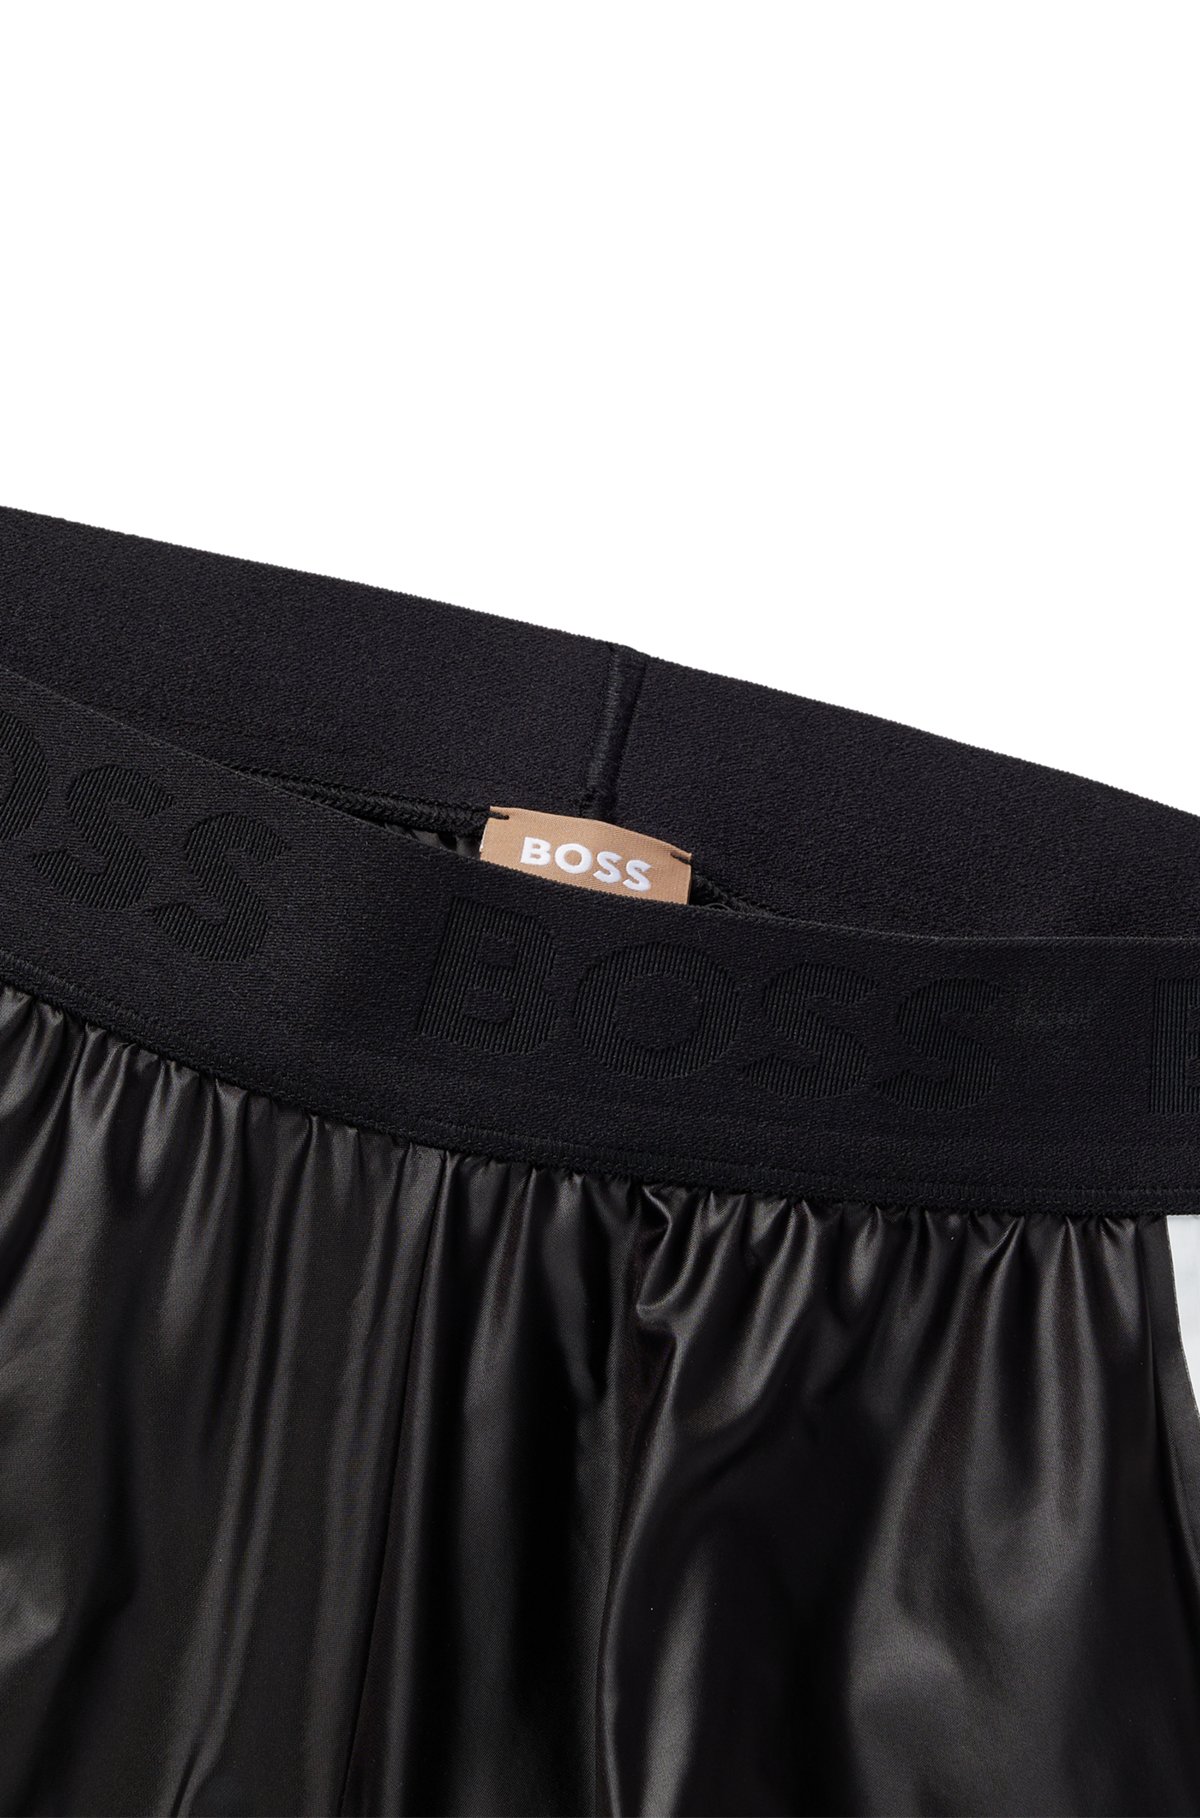 BOSS x Alica Schmidt-løbeshorts med stribet logo, Sort